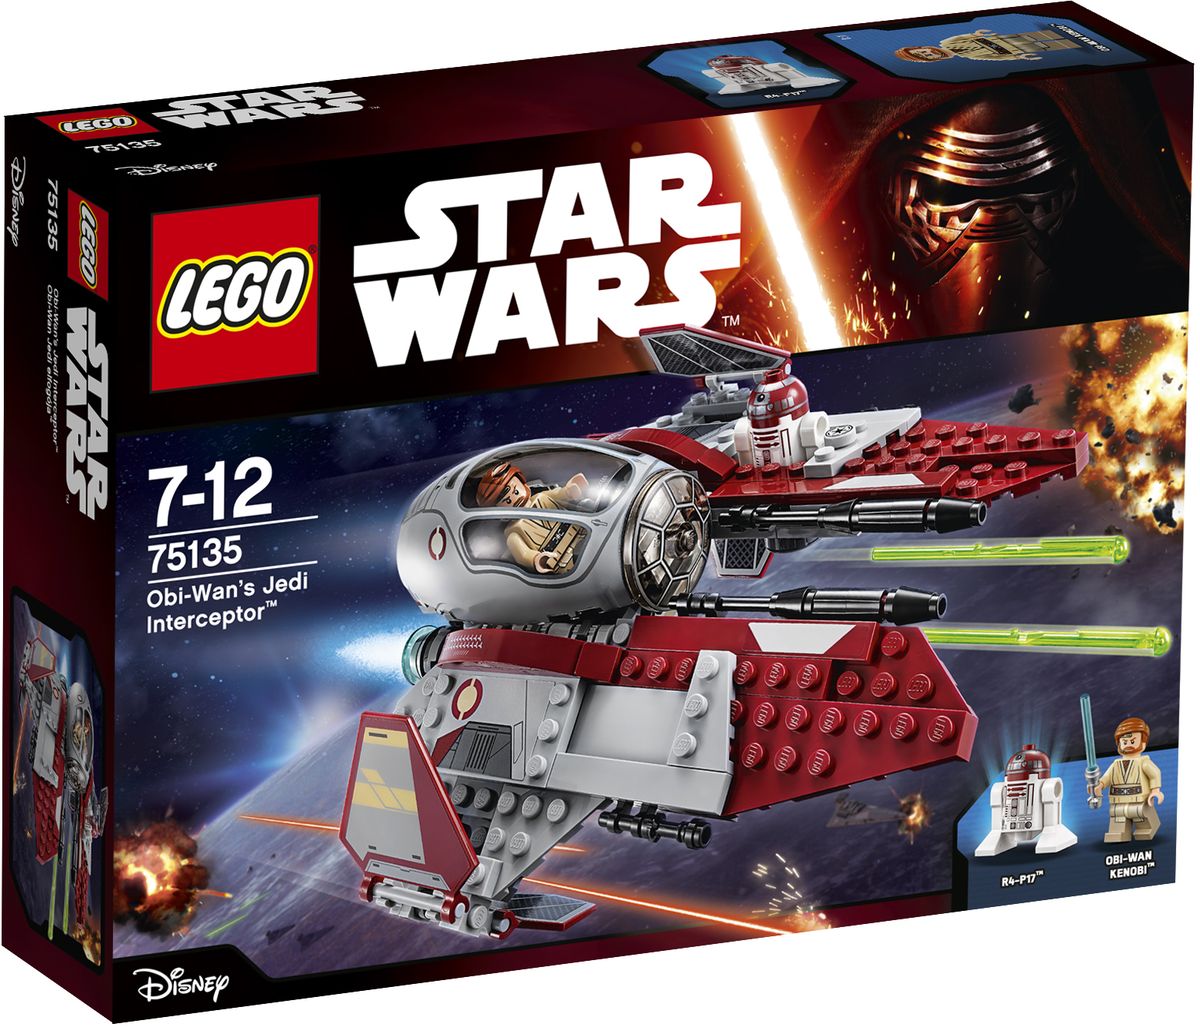 LEGO Star Wars    -  - LEGO75135 Lego Star Wars   -           .   215  ,             .  -            .      -.    ,       !   ,       .       .         - .       , ,     .            .